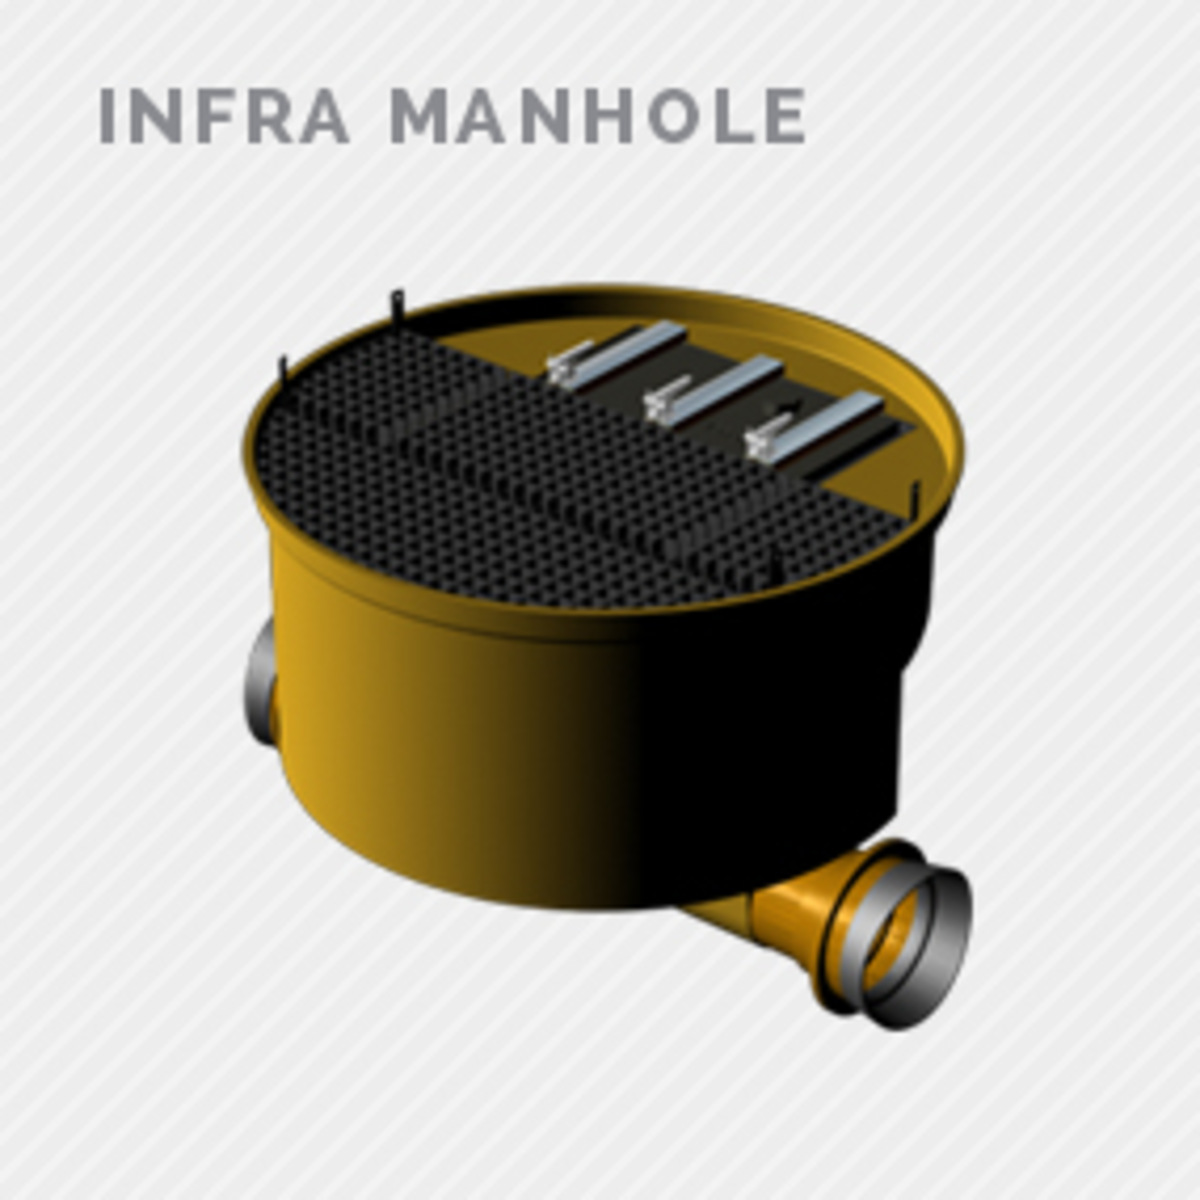 Infra manhole product Folder